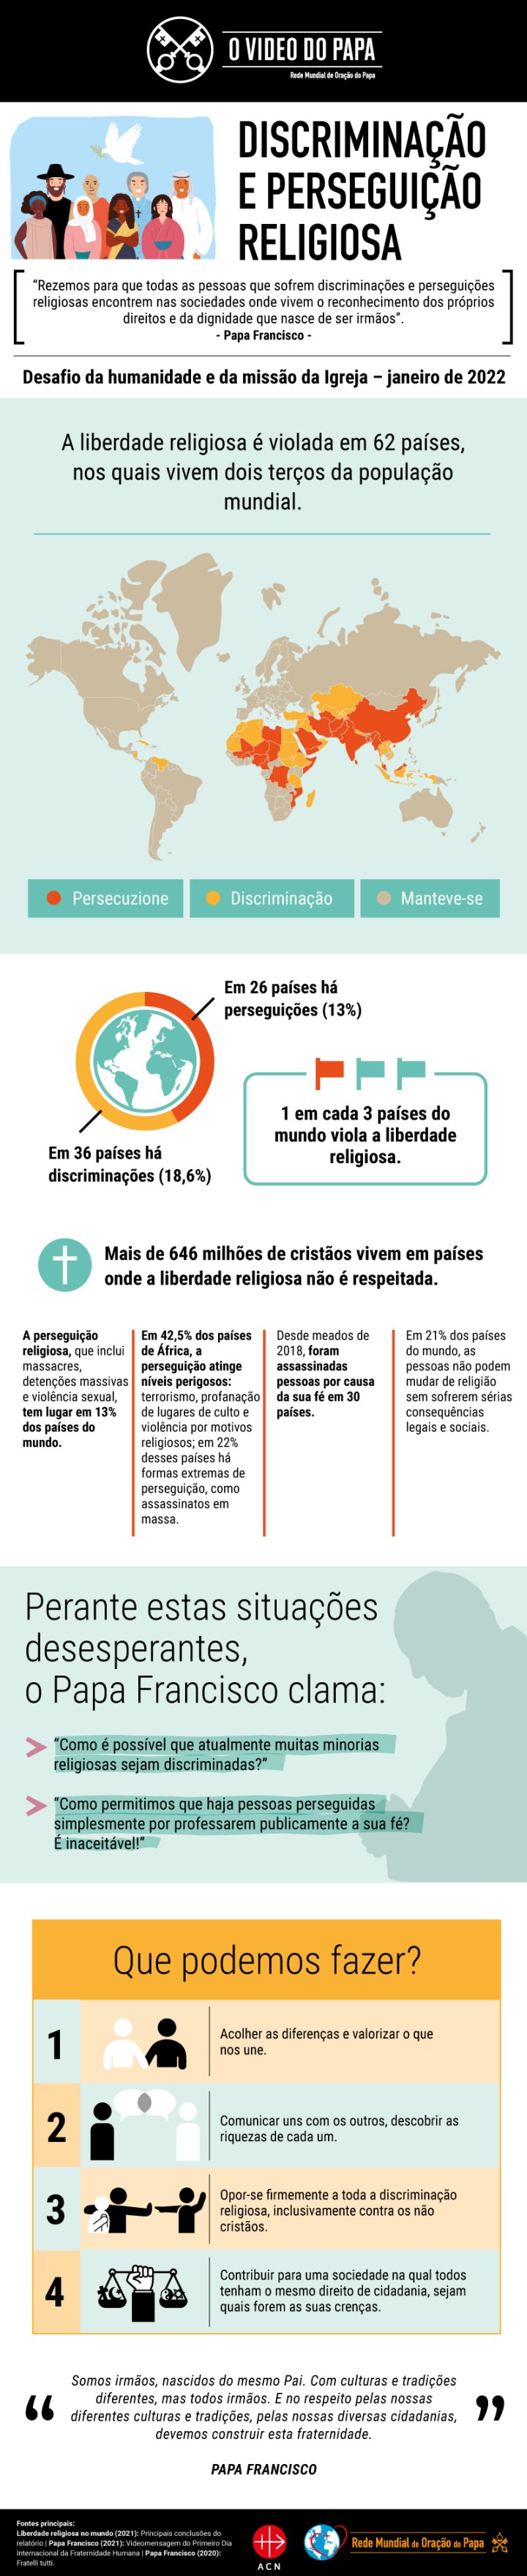 Infographic-TPV-1-2022-PT-Discriminacao-e-perseguicao-religiosa.jpg